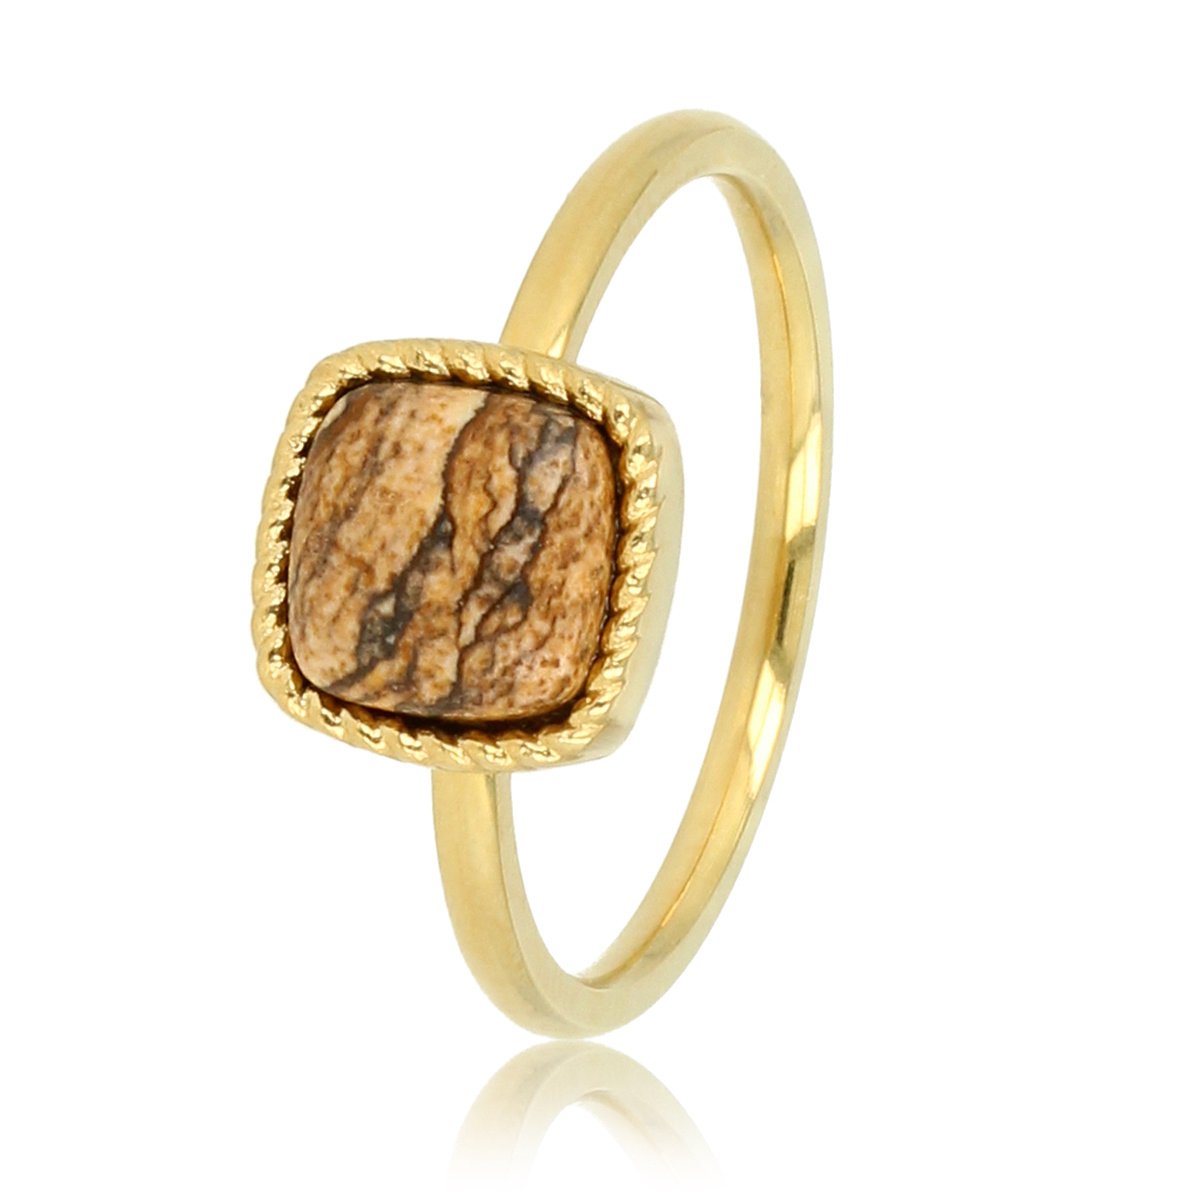 My Bendel - Gouden ring met vierkanten Picture Jasper edelsteen - Klassieke ring met bijzondere Picture Jasper edelsteen - Met luxe cadeauverpakking